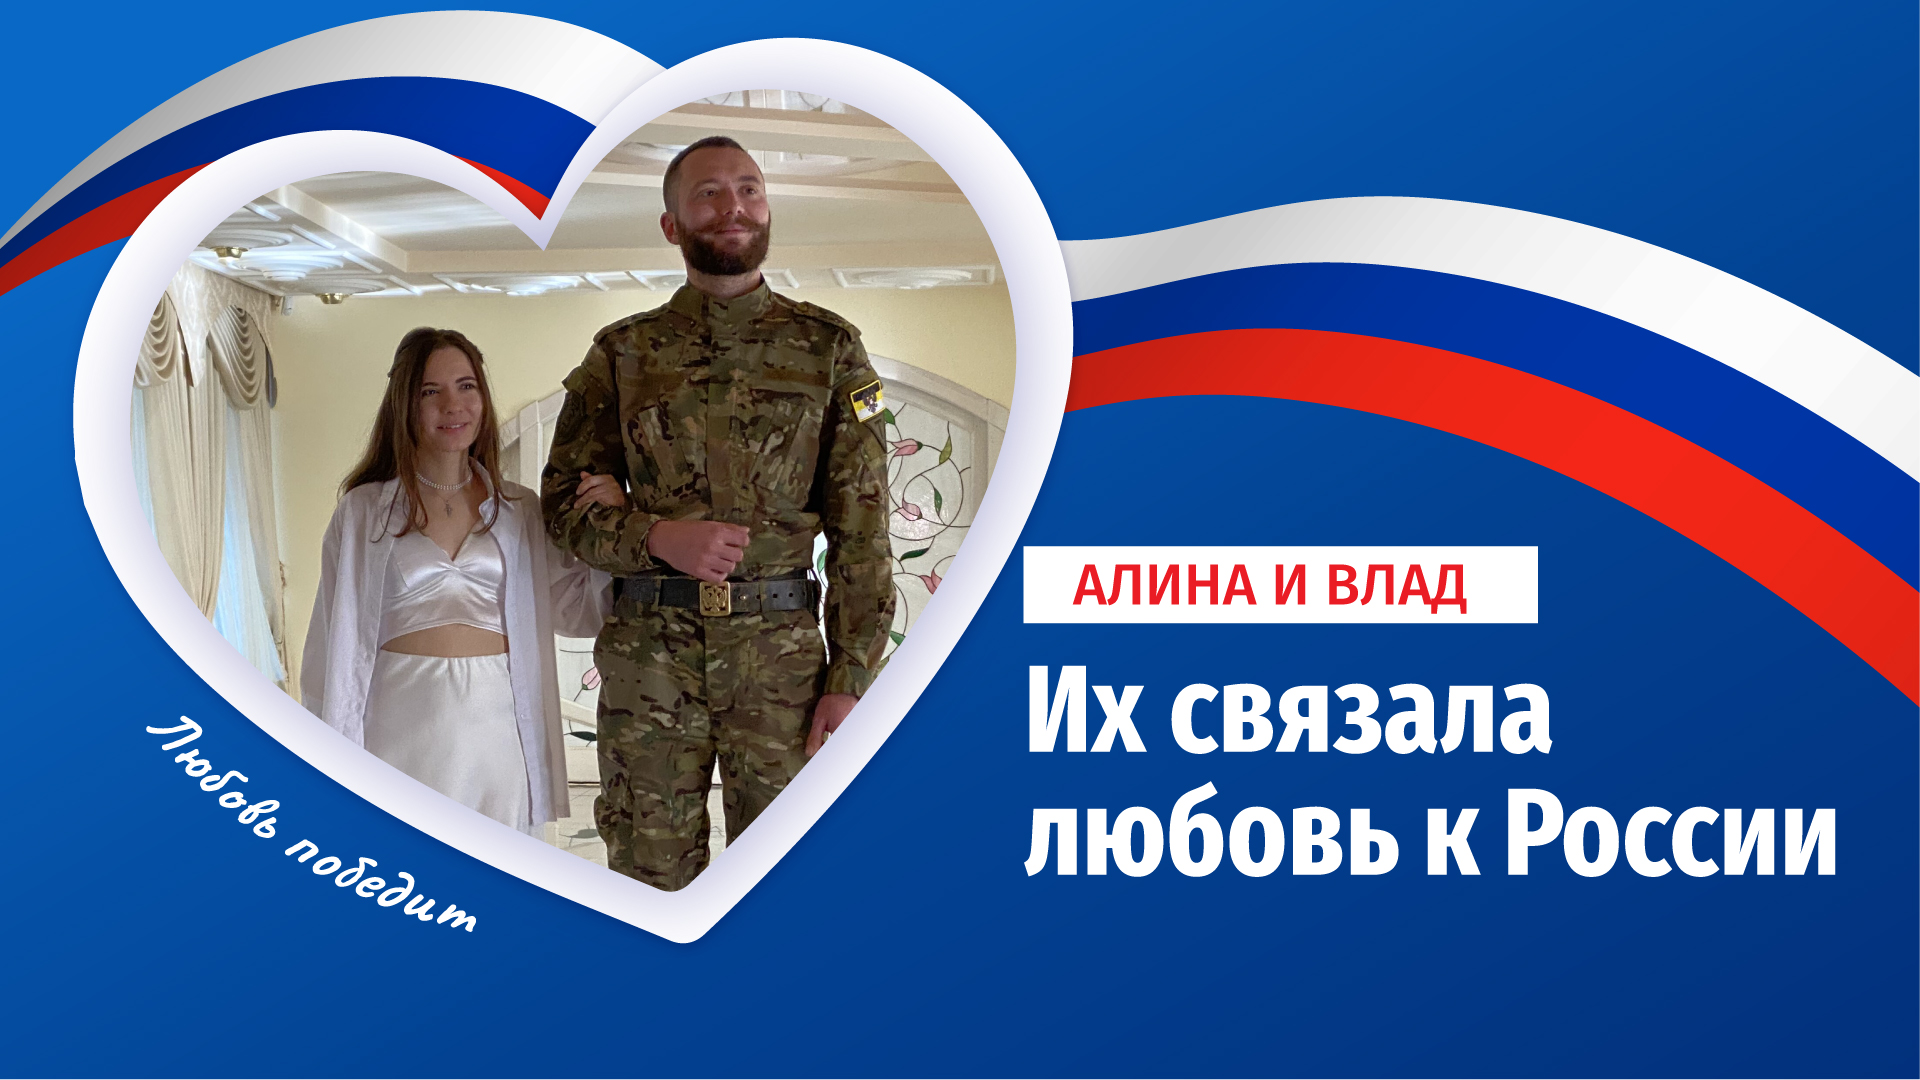 Их связала любовь к России: в Луганске поженились доброволец СВО и уроженка Латвии